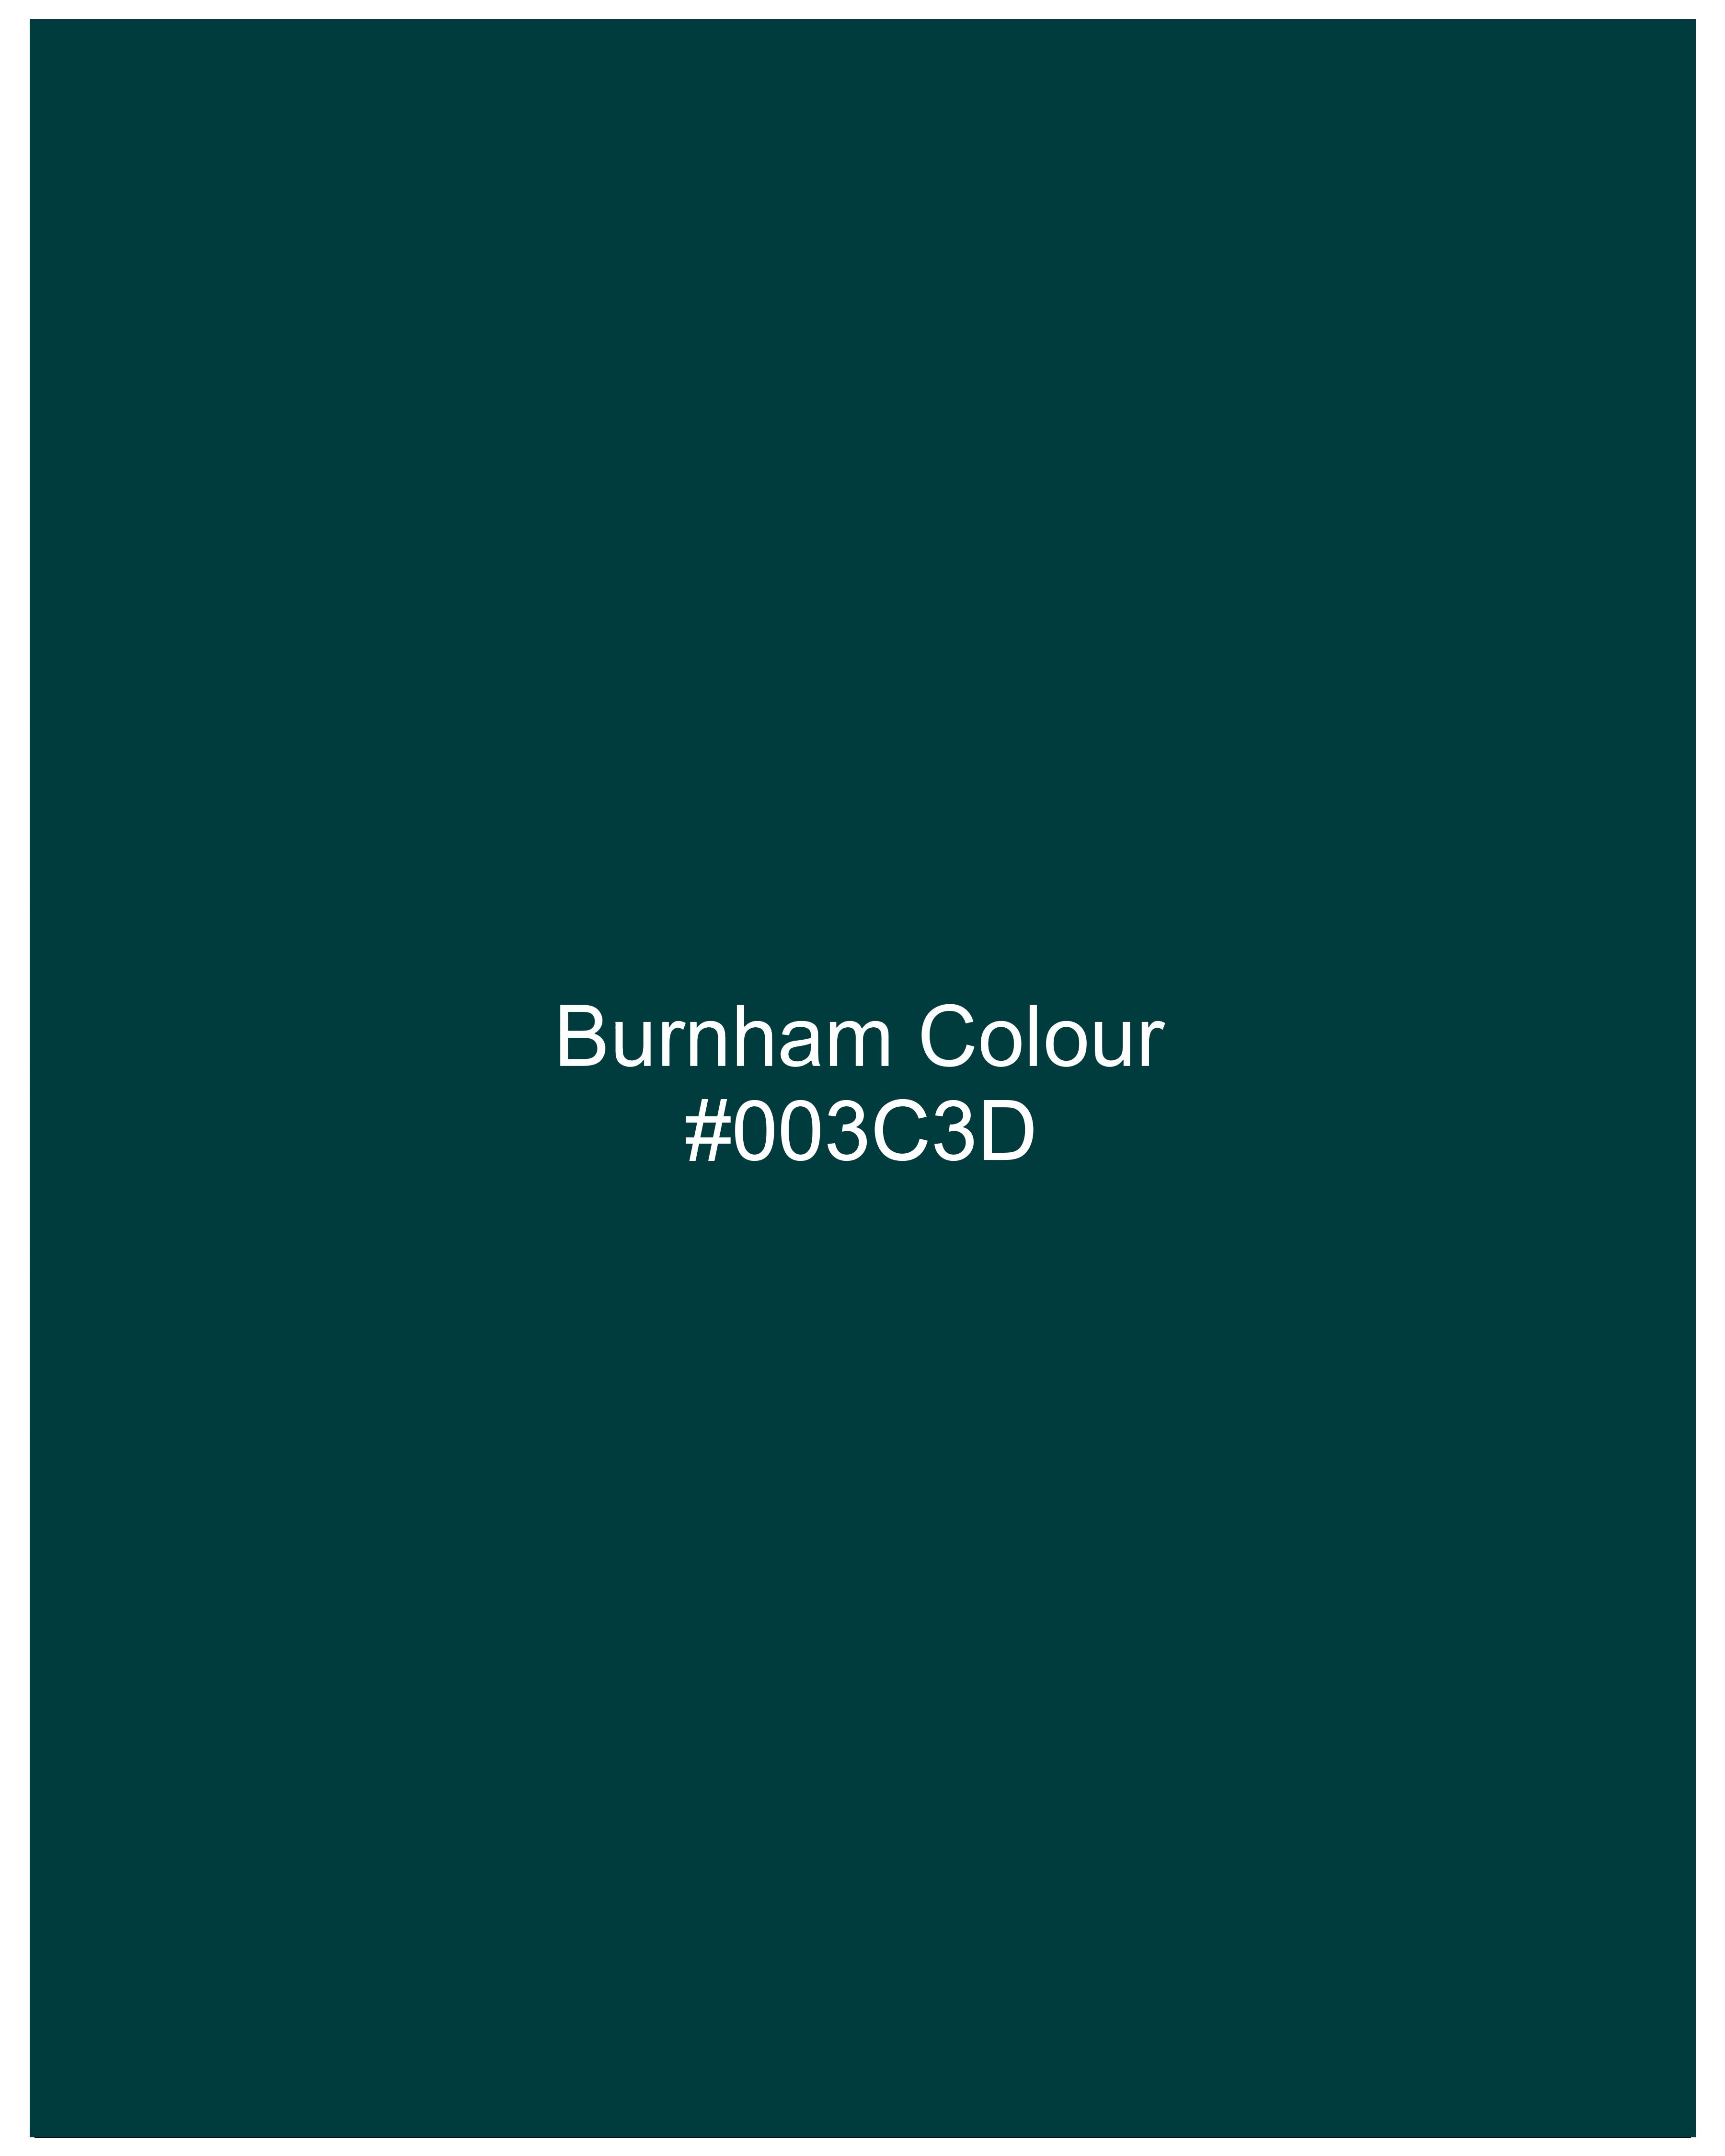 Burnham Green Bandhgala Velvet Blazer BL2575-BG-36,BL2575-BG-38,BL2575-BG-40,BL2575-BG-42,BL2575-BG-44,BL2575-BG-46,BL2575-BG-48,BL2575-BG-50,,BL2575-BG-52,BL2575-BG-54,BL2575-BG-56,BL2575-BG-58,BL2575-BG-60